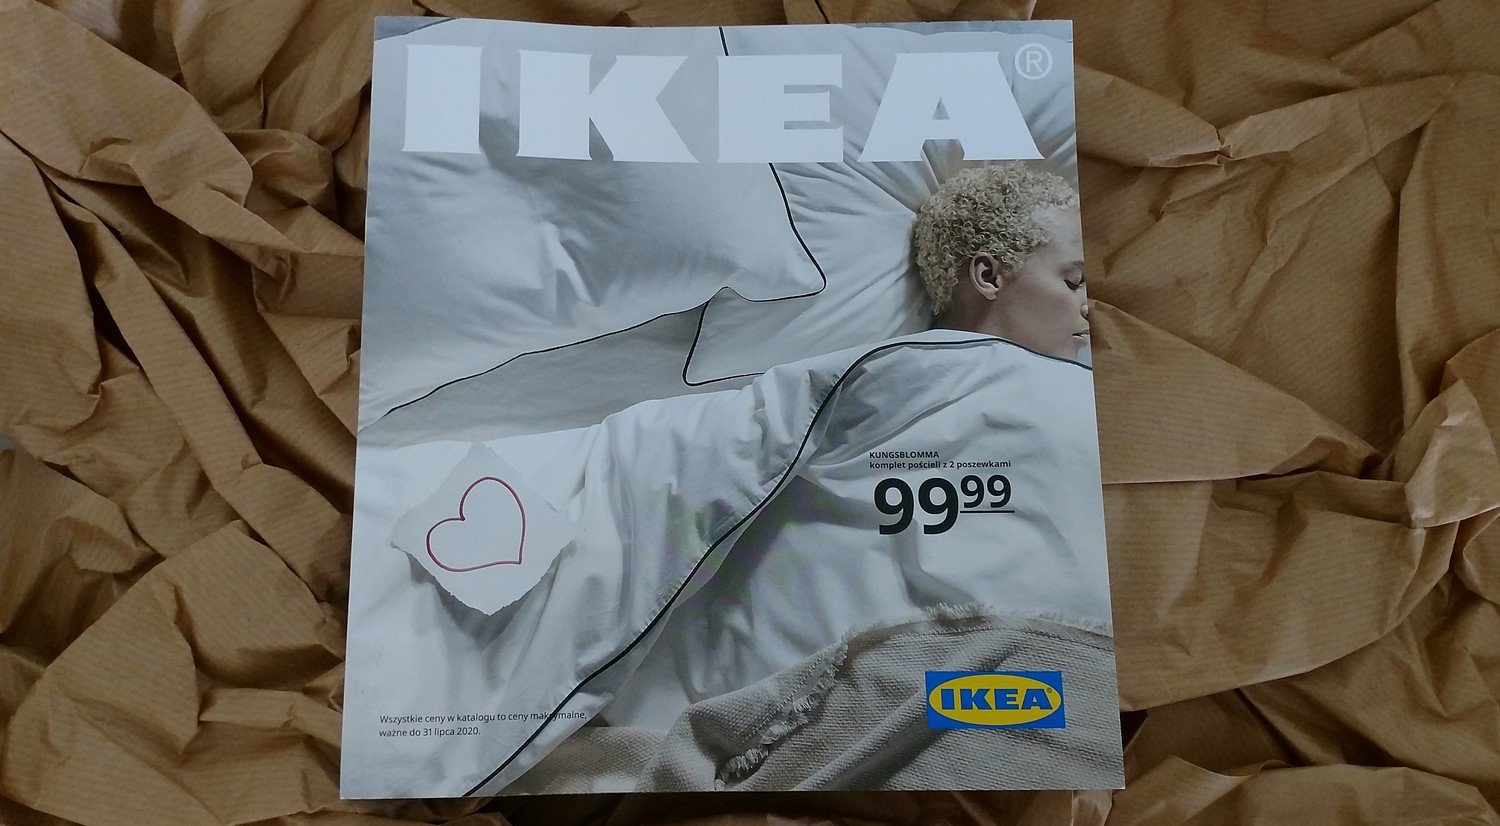 Nowy Katalog Ikea 2020 Nie Trafi Juz Do Skrzynek Co Zrobic Zeby Go Otrzymac Przejrzyj Online Nowy Katalog Ikea 2020 Zywiec Nasze Miasto